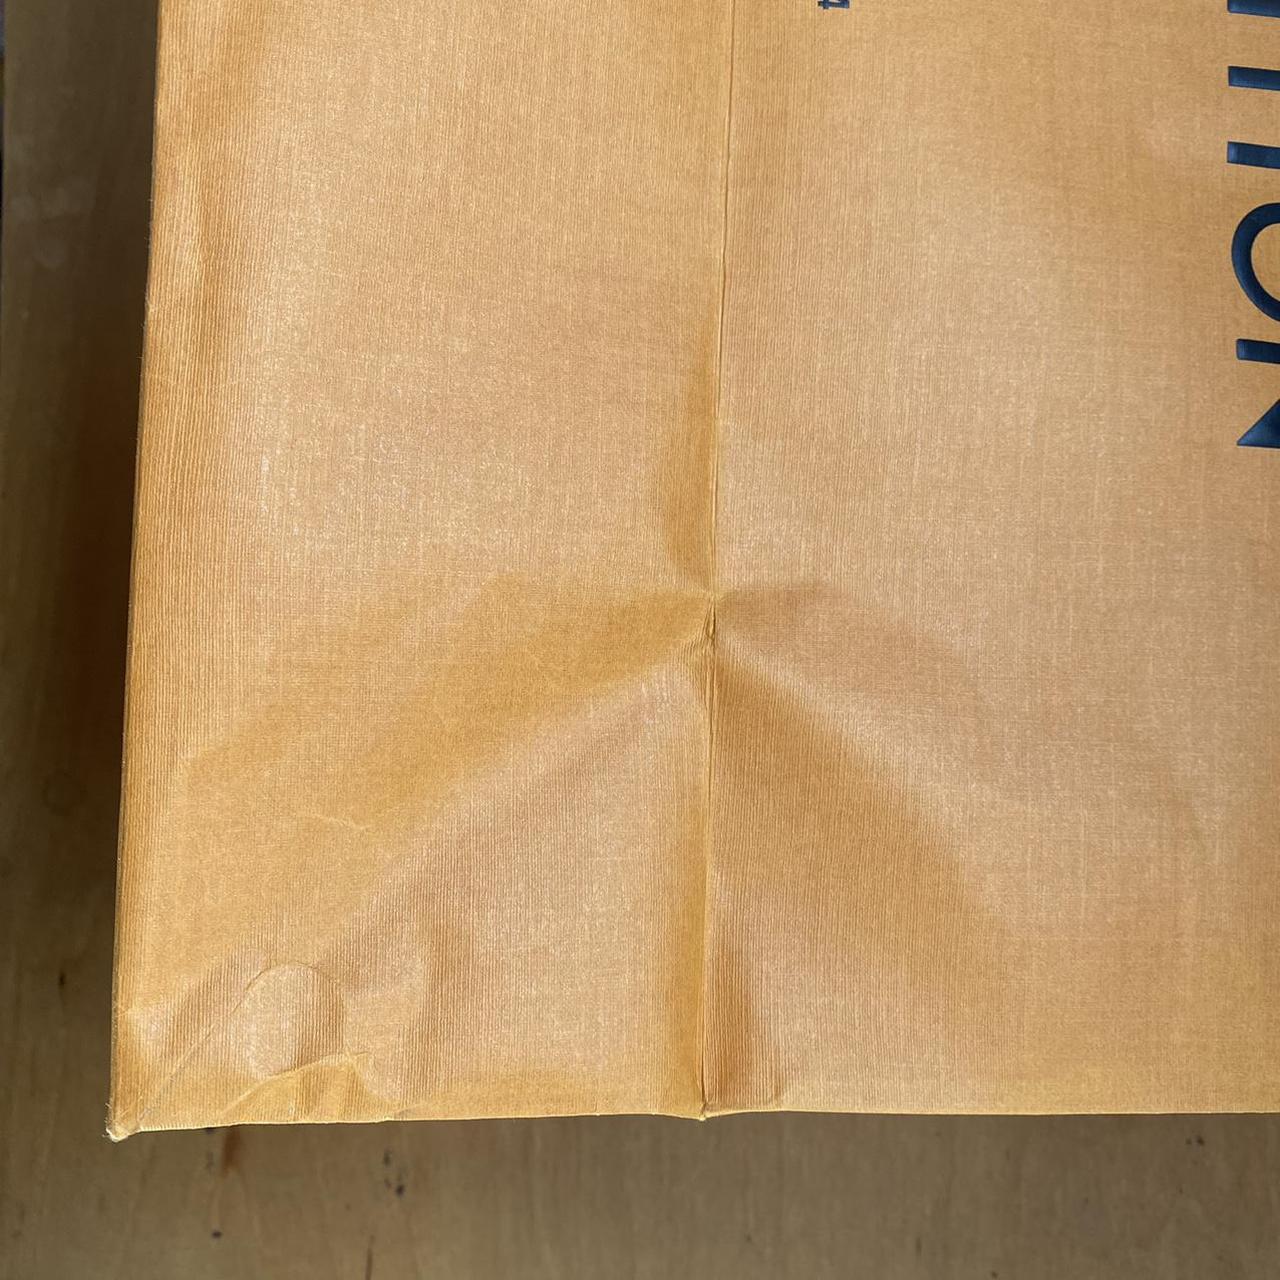 Authentic LOUIS VUITTON Large Paper Orange Shopping Bag